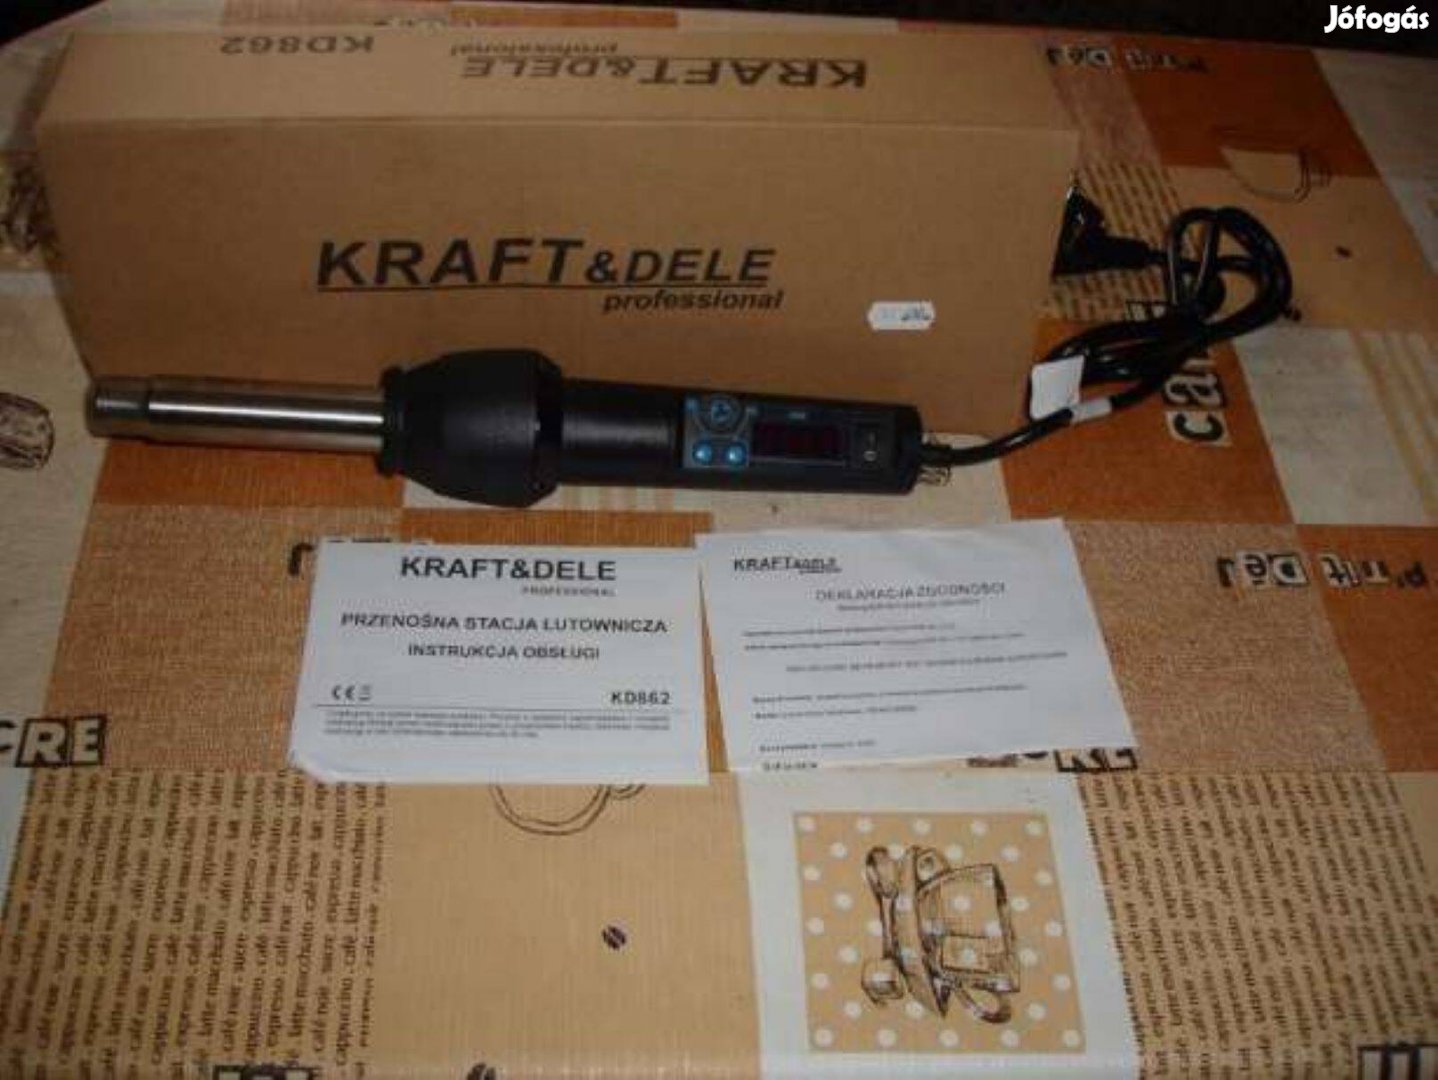 Új Kraft&dele KD862 digitális hőlégfúvó - műanyaghegesztő eladó